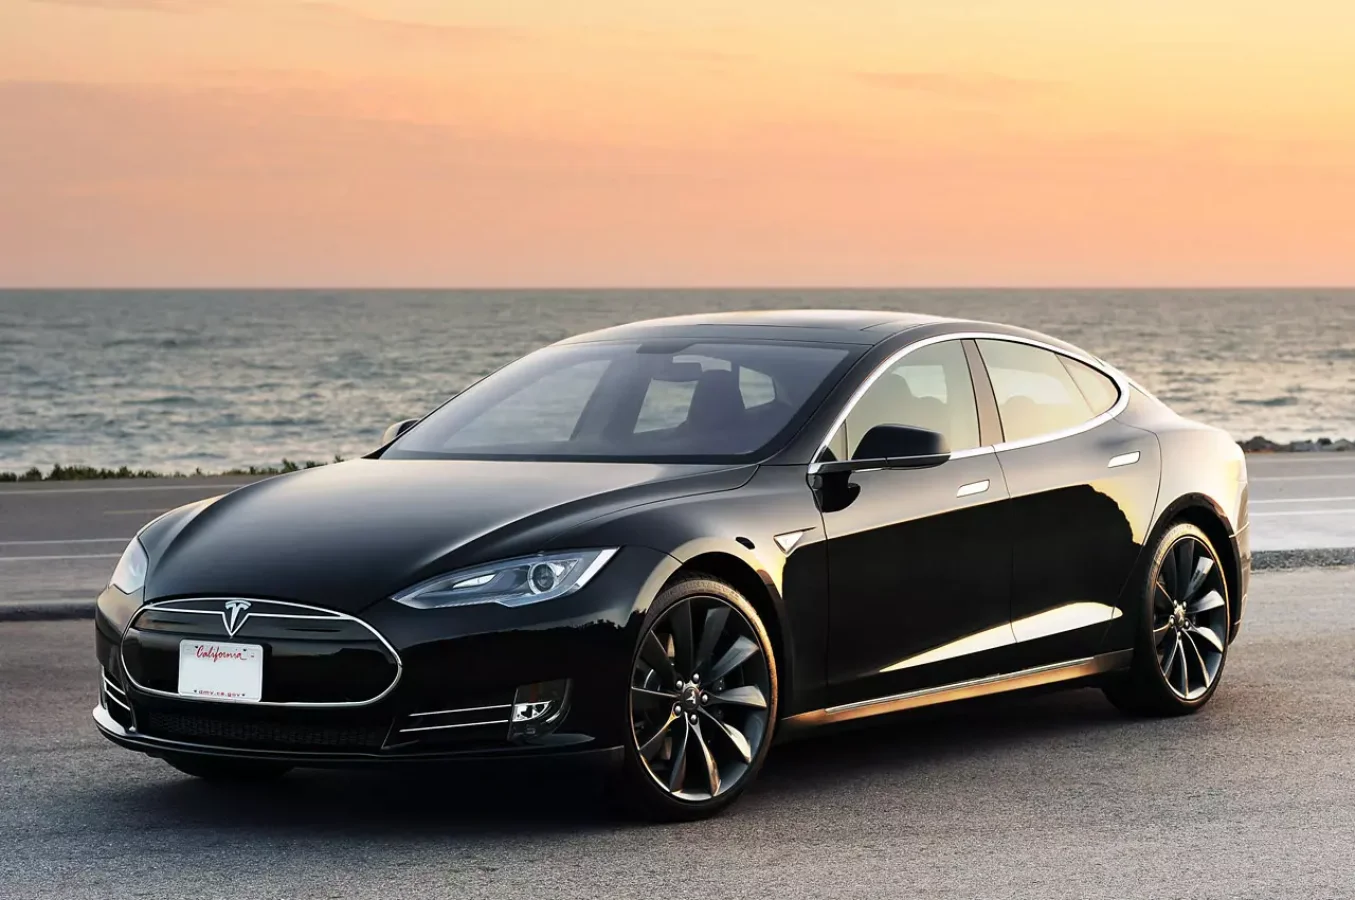 Tesla Fiyatları Yükseltirken, XPeng Düşürüyor: Elektrikli Araç Piyasasında Rekabet Kızışıyor